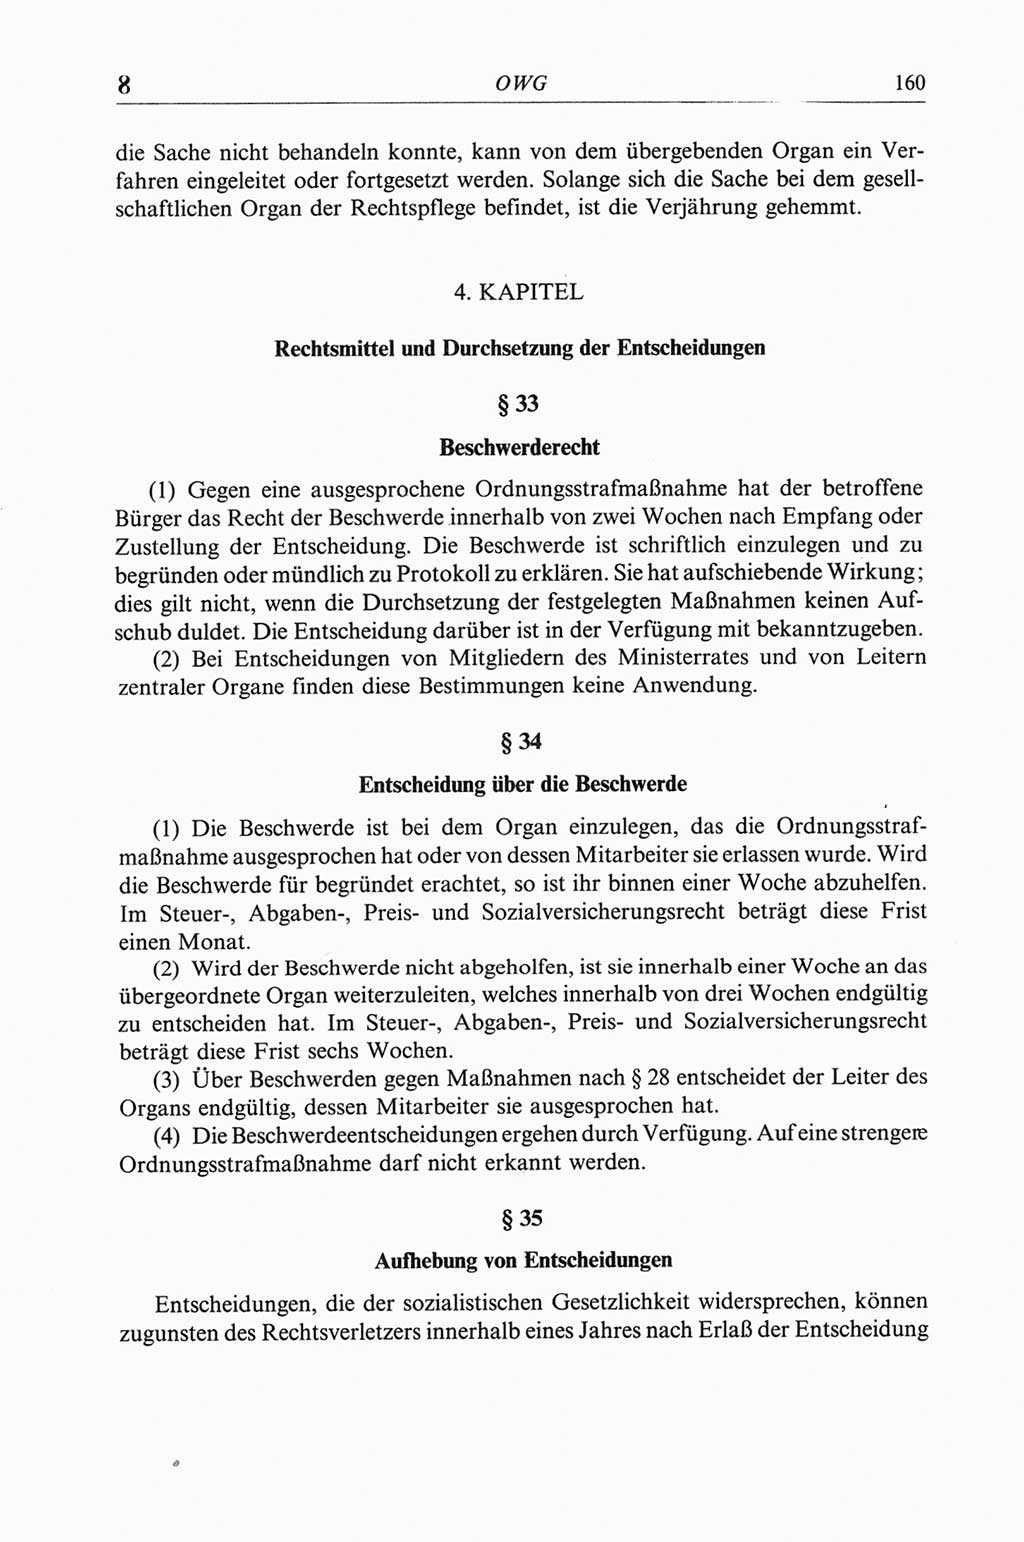 Strafgesetzbuch (StGB) der Deutschen Demokratischen Republik (DDR) und angrenzende Gesetze und Bestimmungen 1968, Seite 160 (StGB Ges. Best. DDR 1968, S. 160)